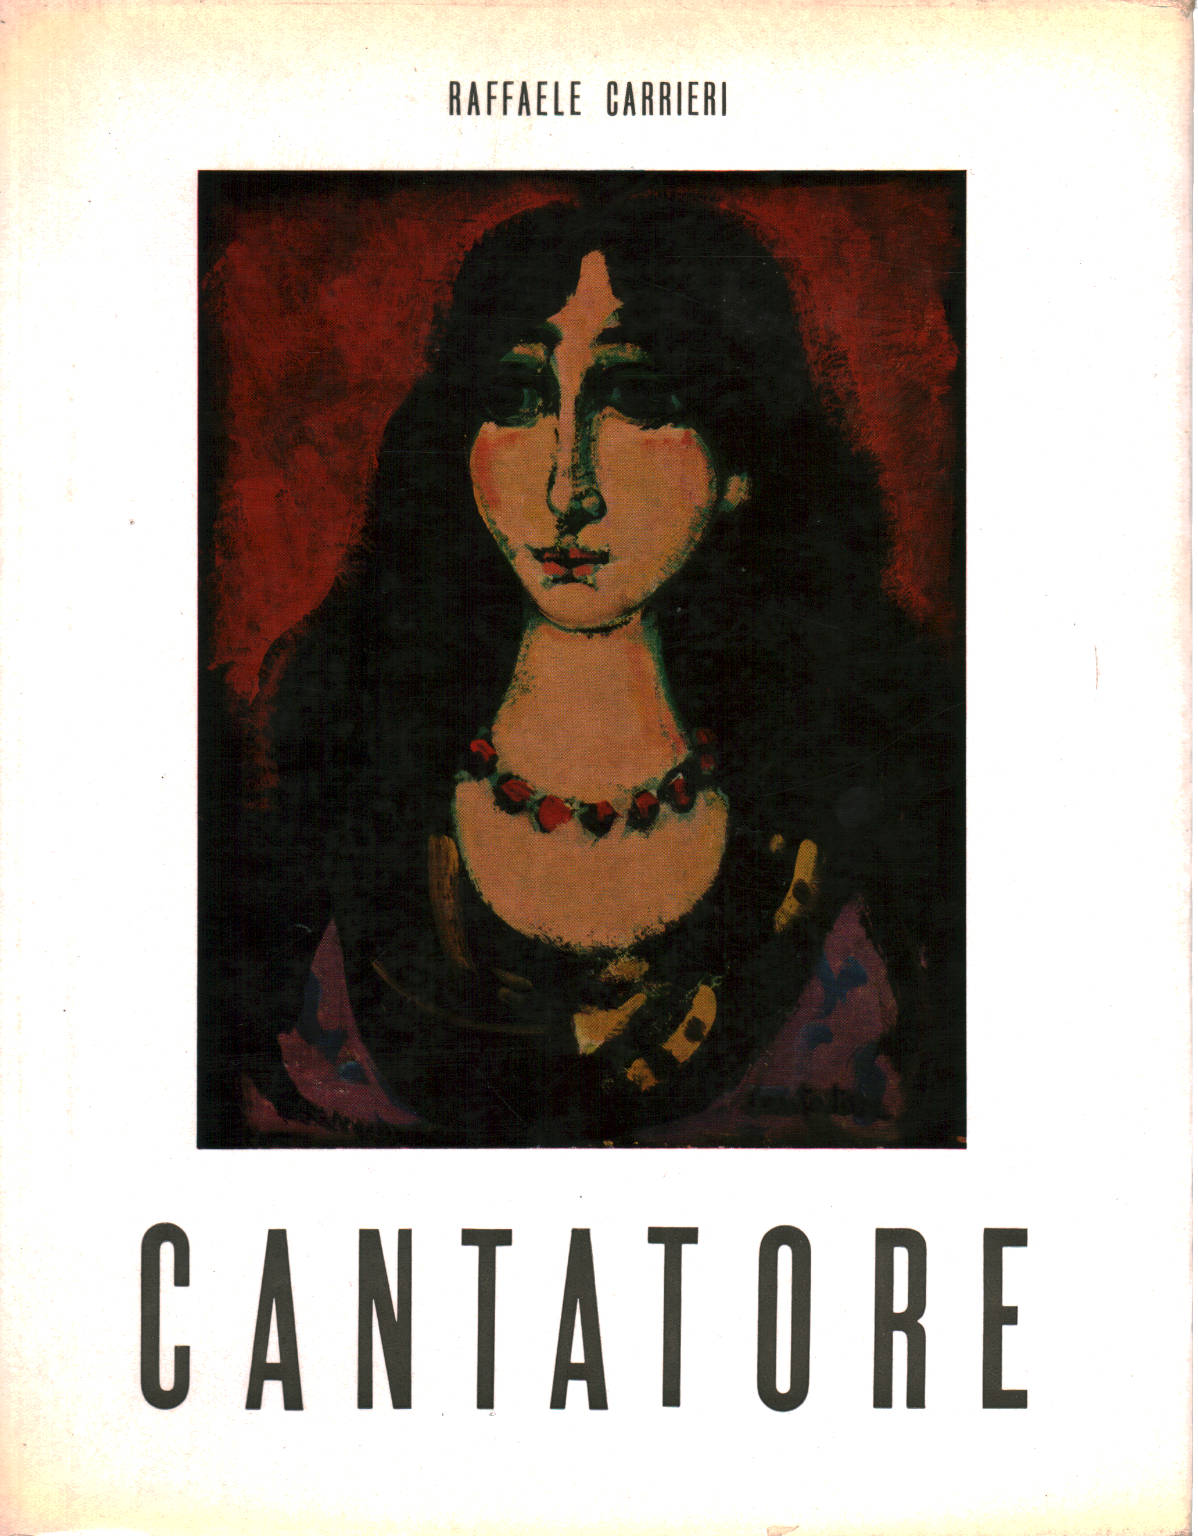 Cantatore, Raffaele Carrieri